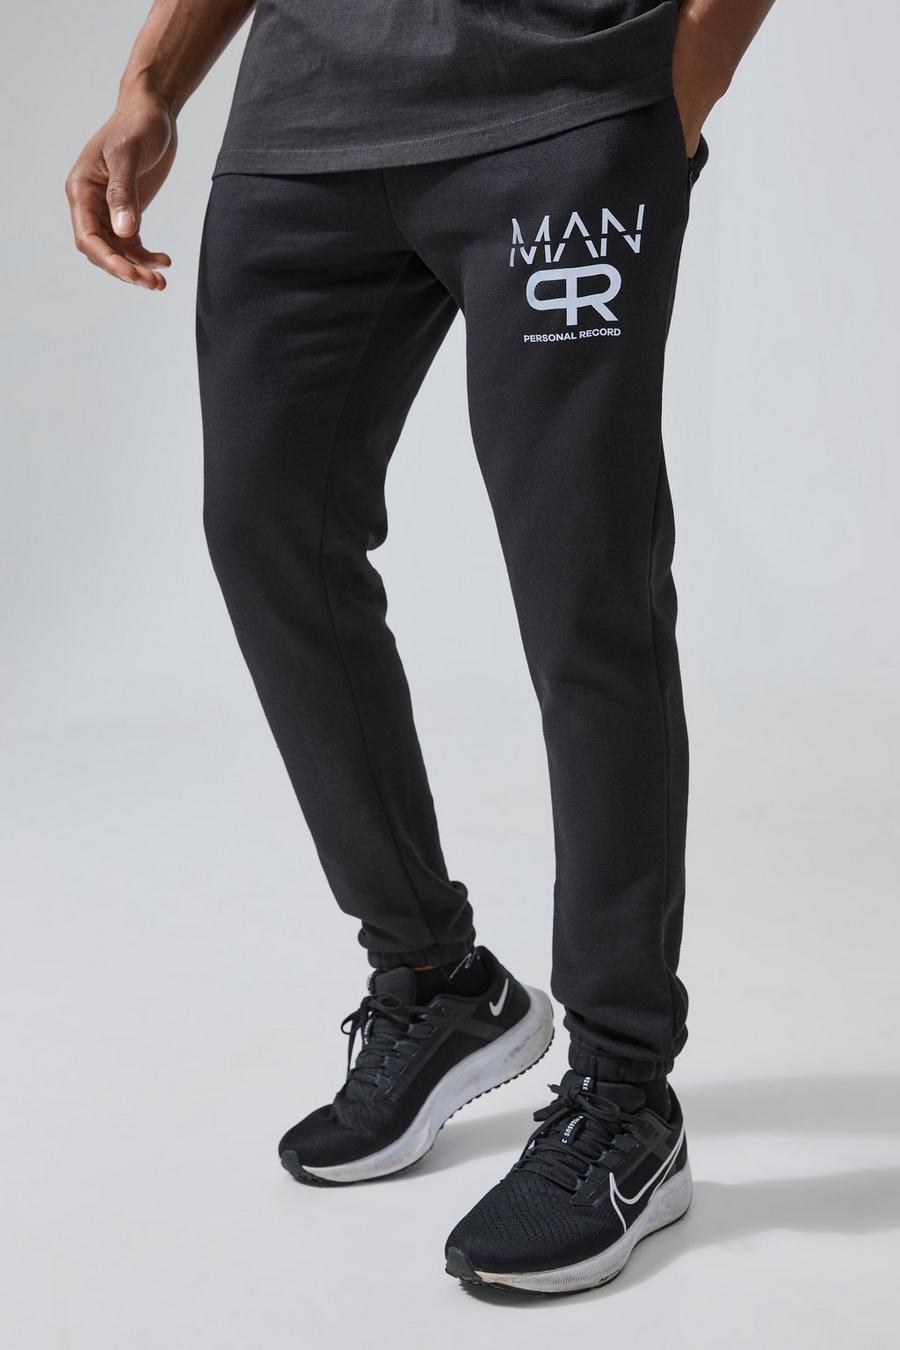 Pantalón deportivo MAN Active con estampado reflectante, Black